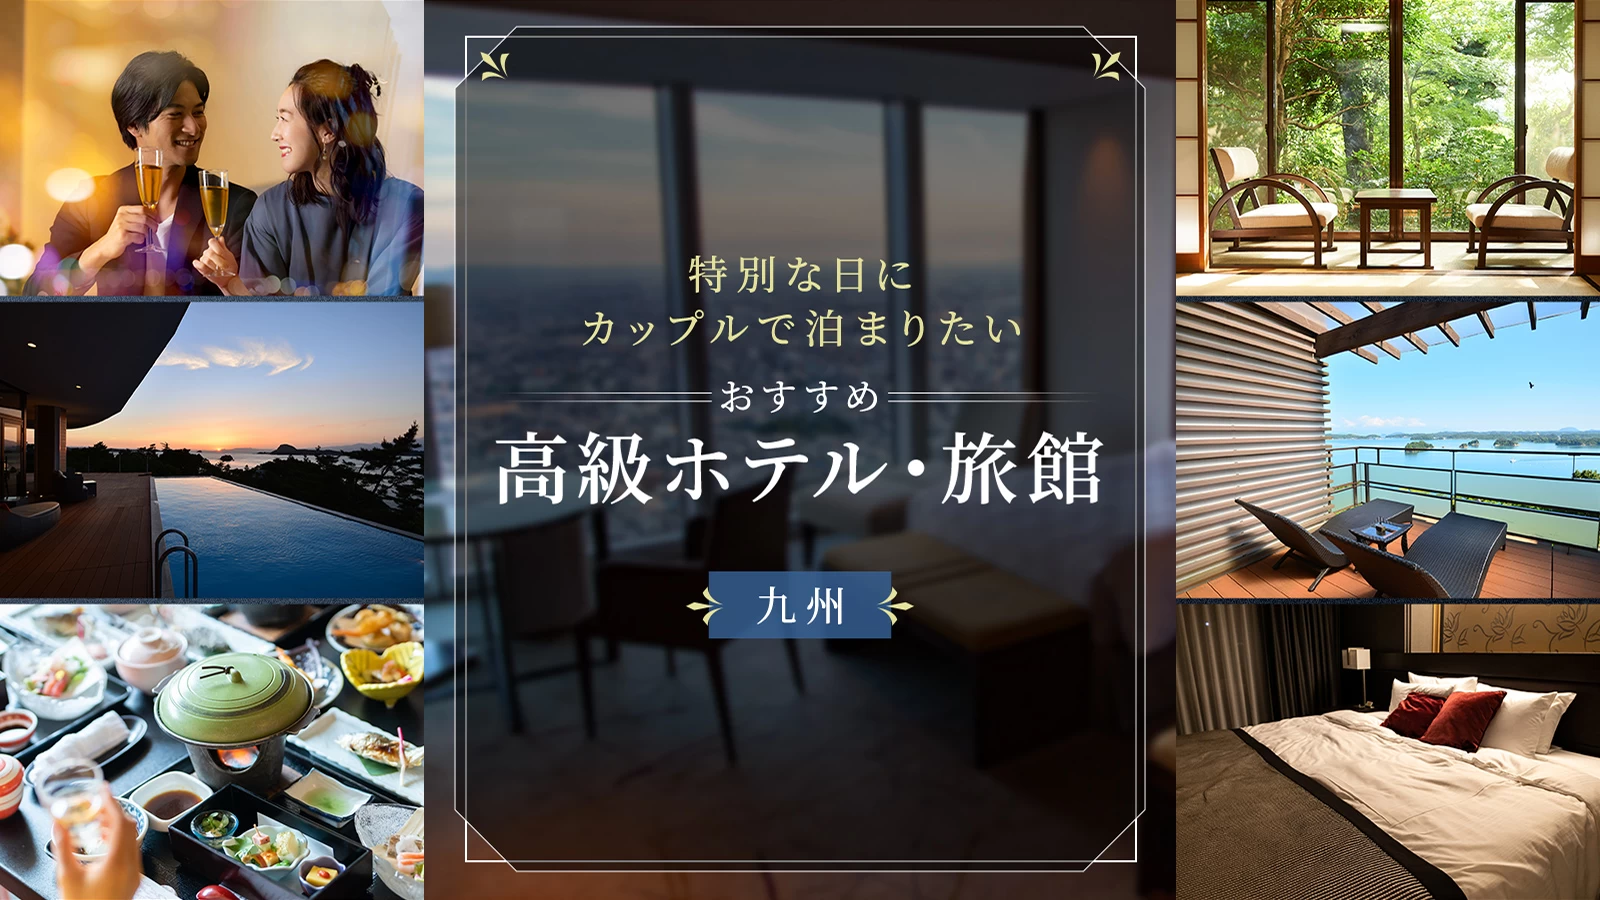 【九州】特別な日にカップルで泊まりたいおすすめ高級ホテル・旅館12選